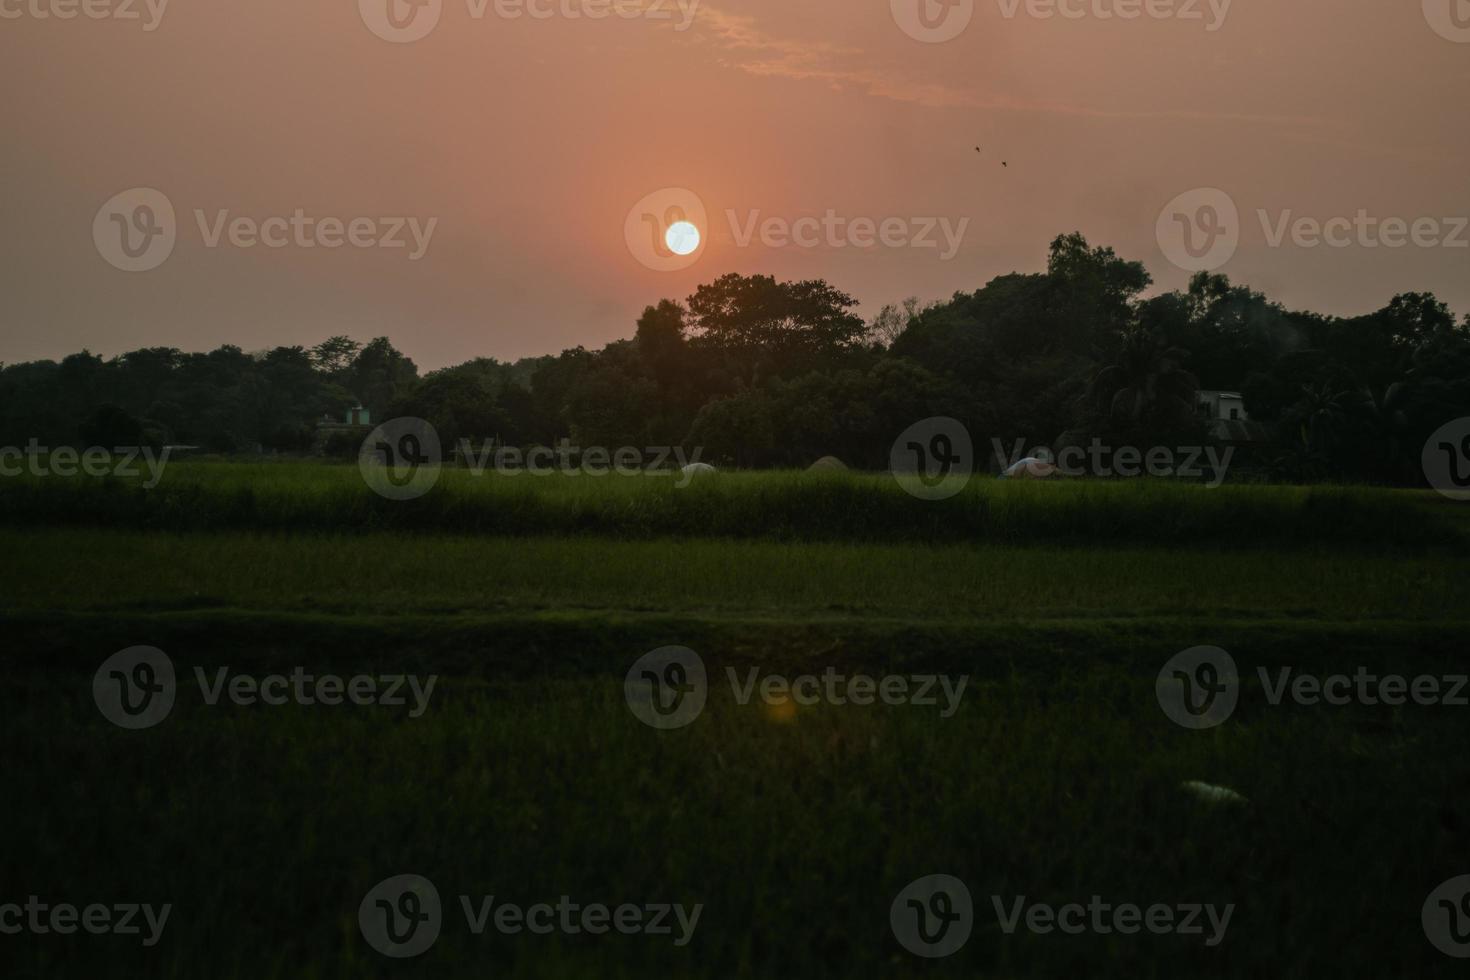 vacker solnedgångsvy med trädsiluetten. röd solhorisont med fåglar som flyger och greenfield foto. fotografering i soluppgången på morgonen med greenfield i ett landsbygdsområde eller byområde. foto